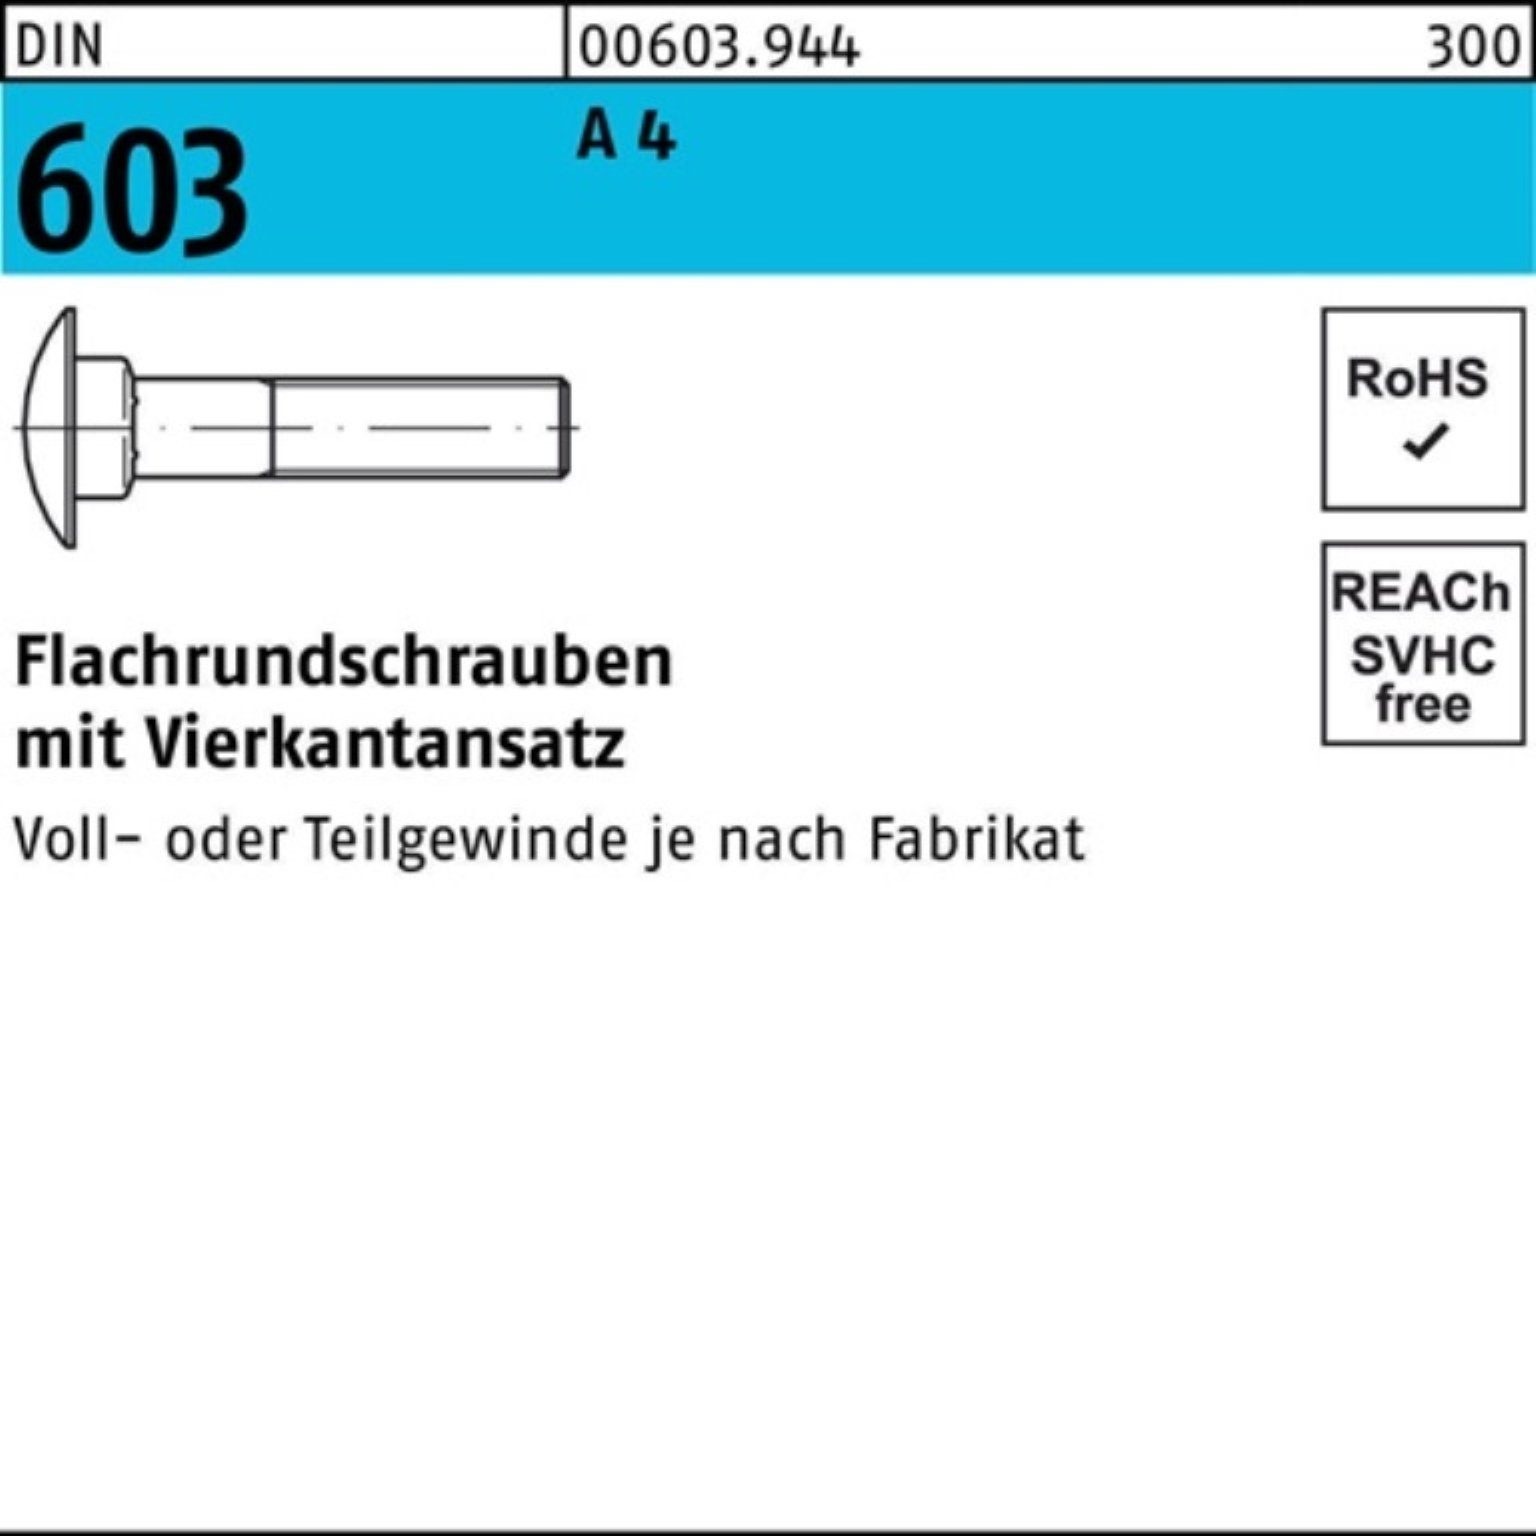 25 40 Schraube Flachrundschraube 603 A Pack 4 Reyher Vierkantansatz 100er M8x DIN Stü